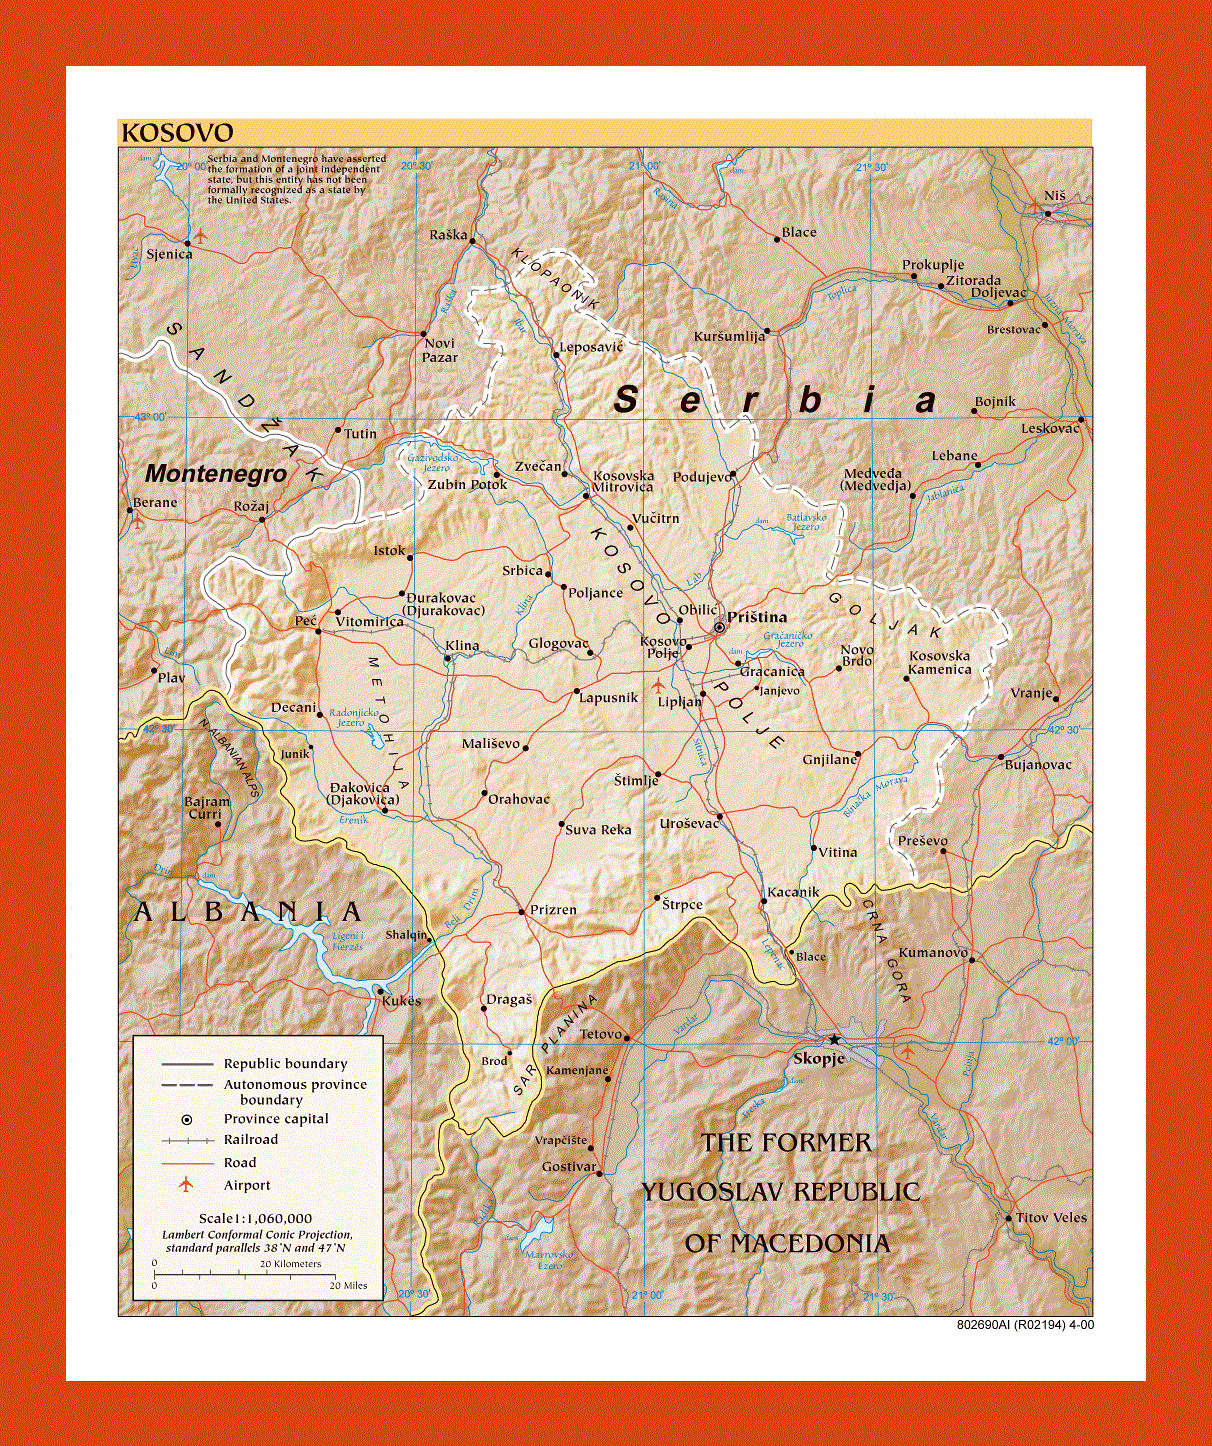 Political map of Kosovo - 2000